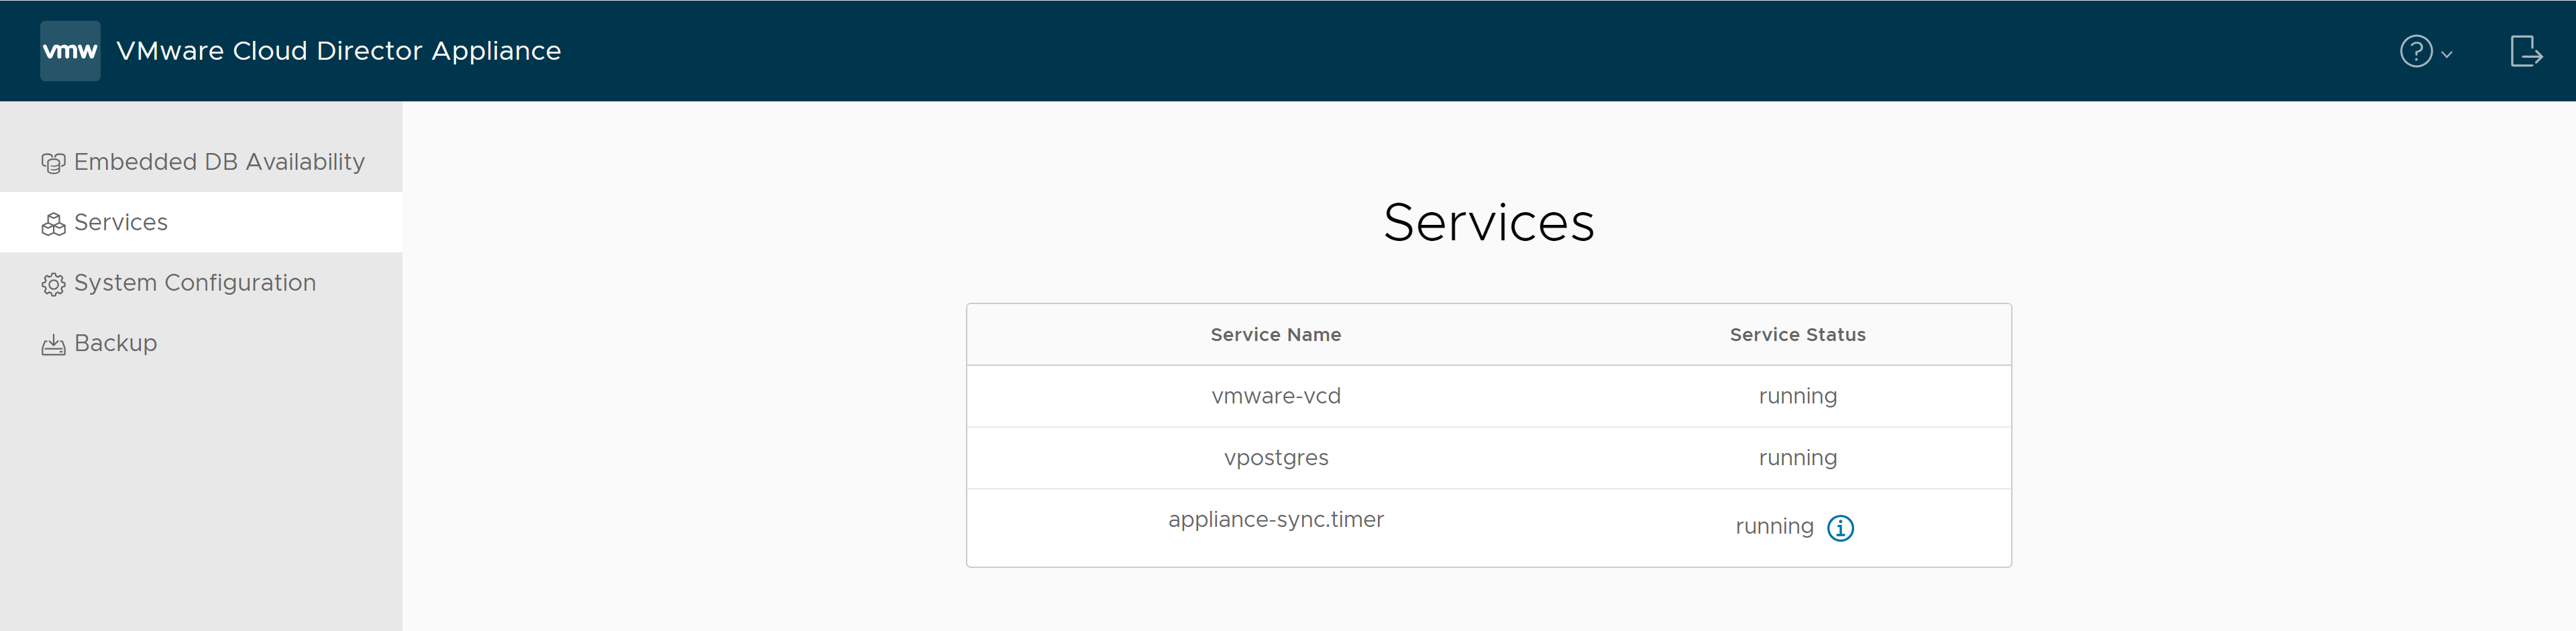 在 VMware Cloud Director 设备管理 UI 的“服务”选项卡上，可以找到服务的名称及其状态。